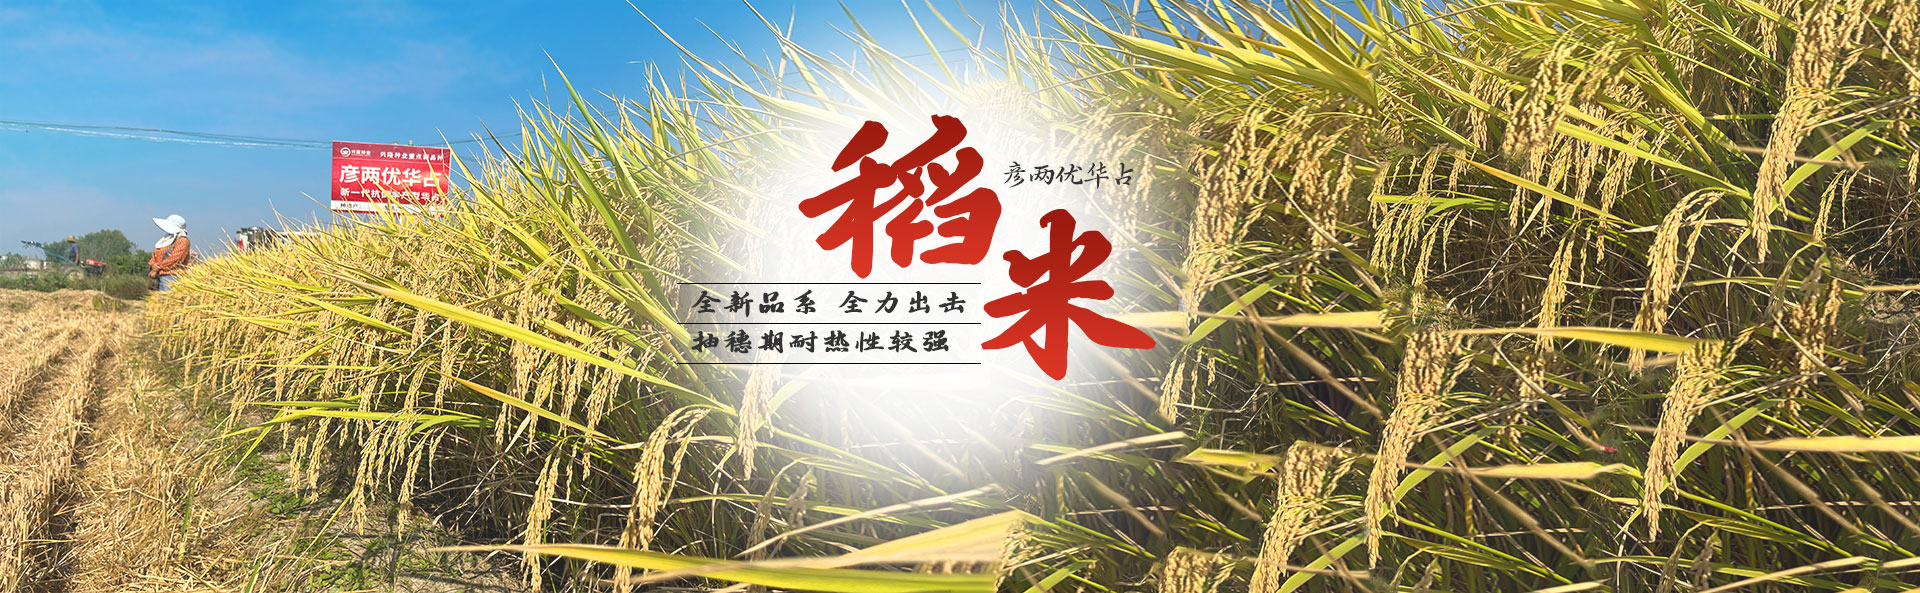 金沙js6038_长沙稻谷种植与销售|长沙农作物品种的选育